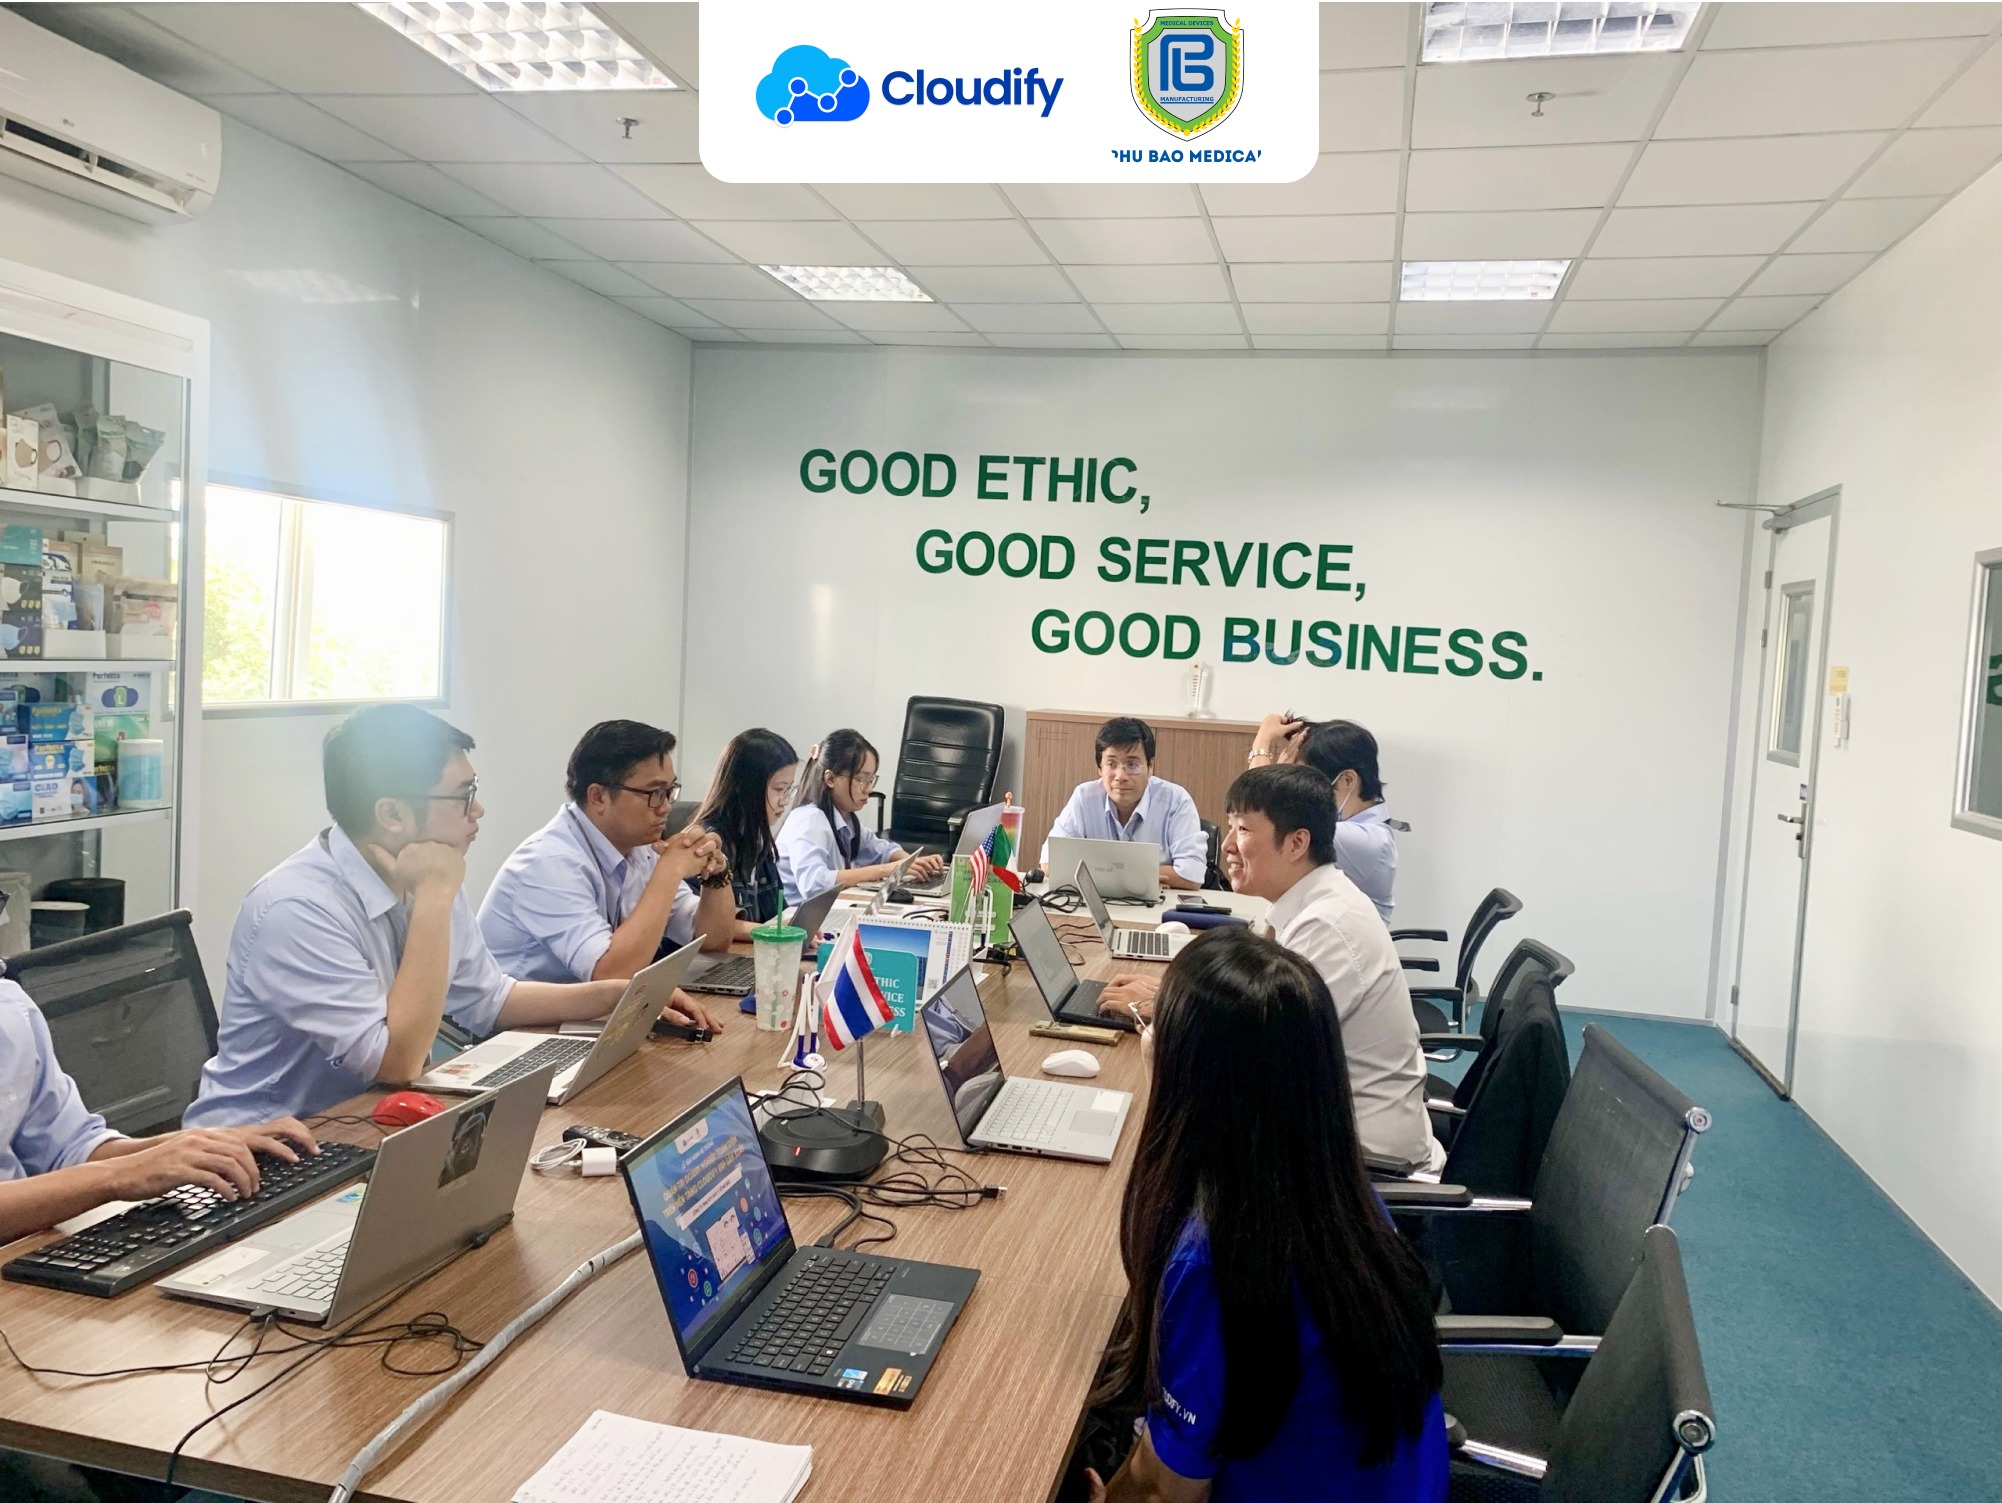 Phú Bảo medical quyết định lựa chọn đồng hành cùng Cloudify để tối ưu hóa hoạt động quản trị doanh